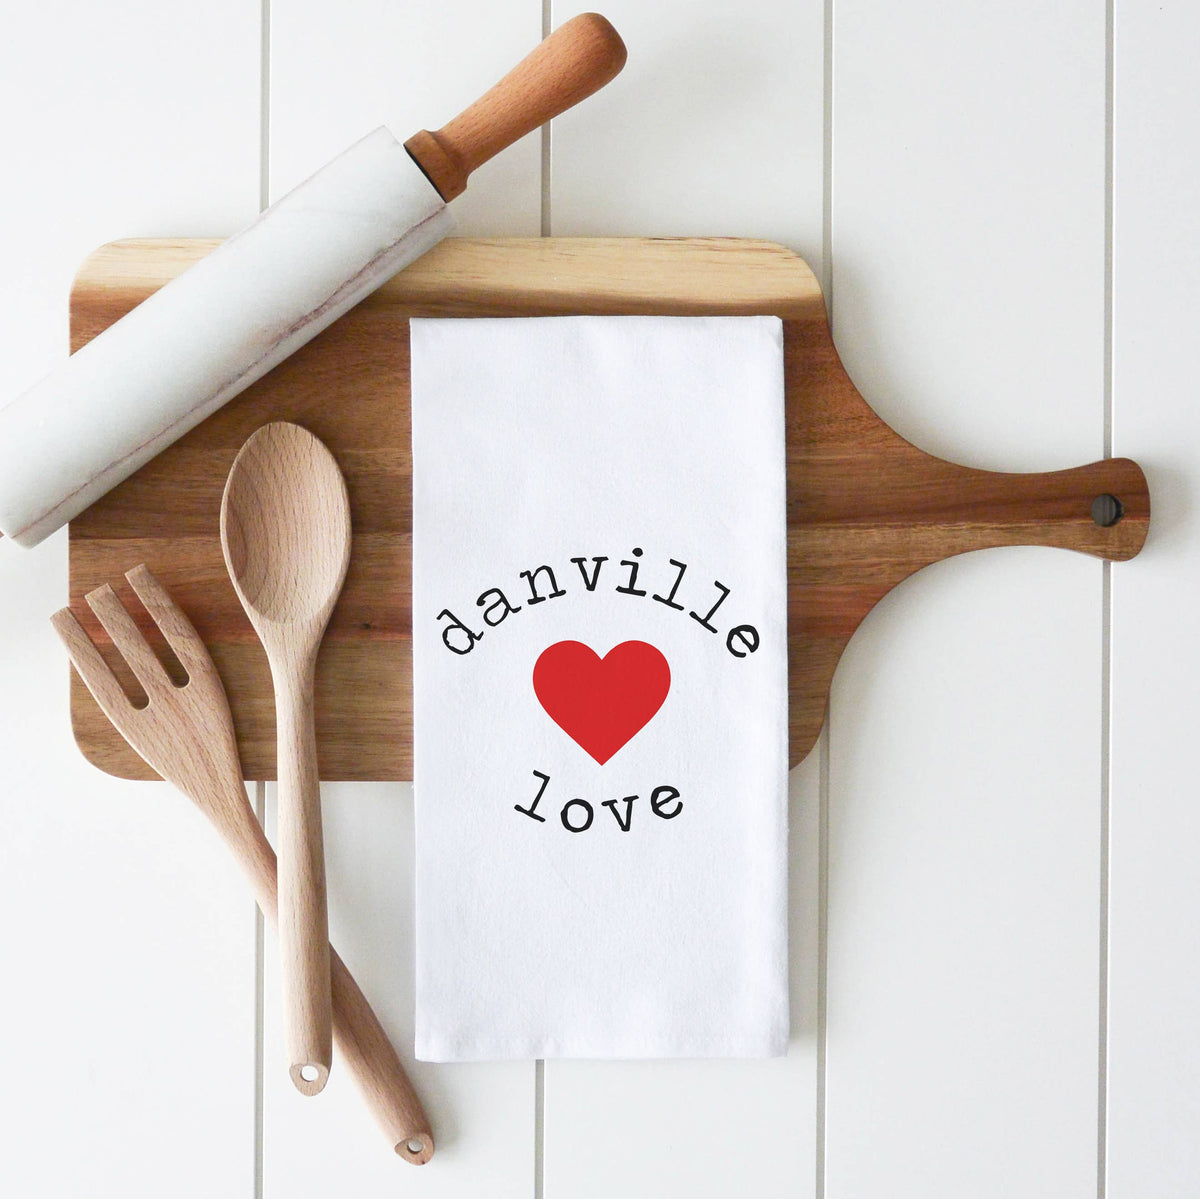 Danville LOVE Kitchen Towel D1